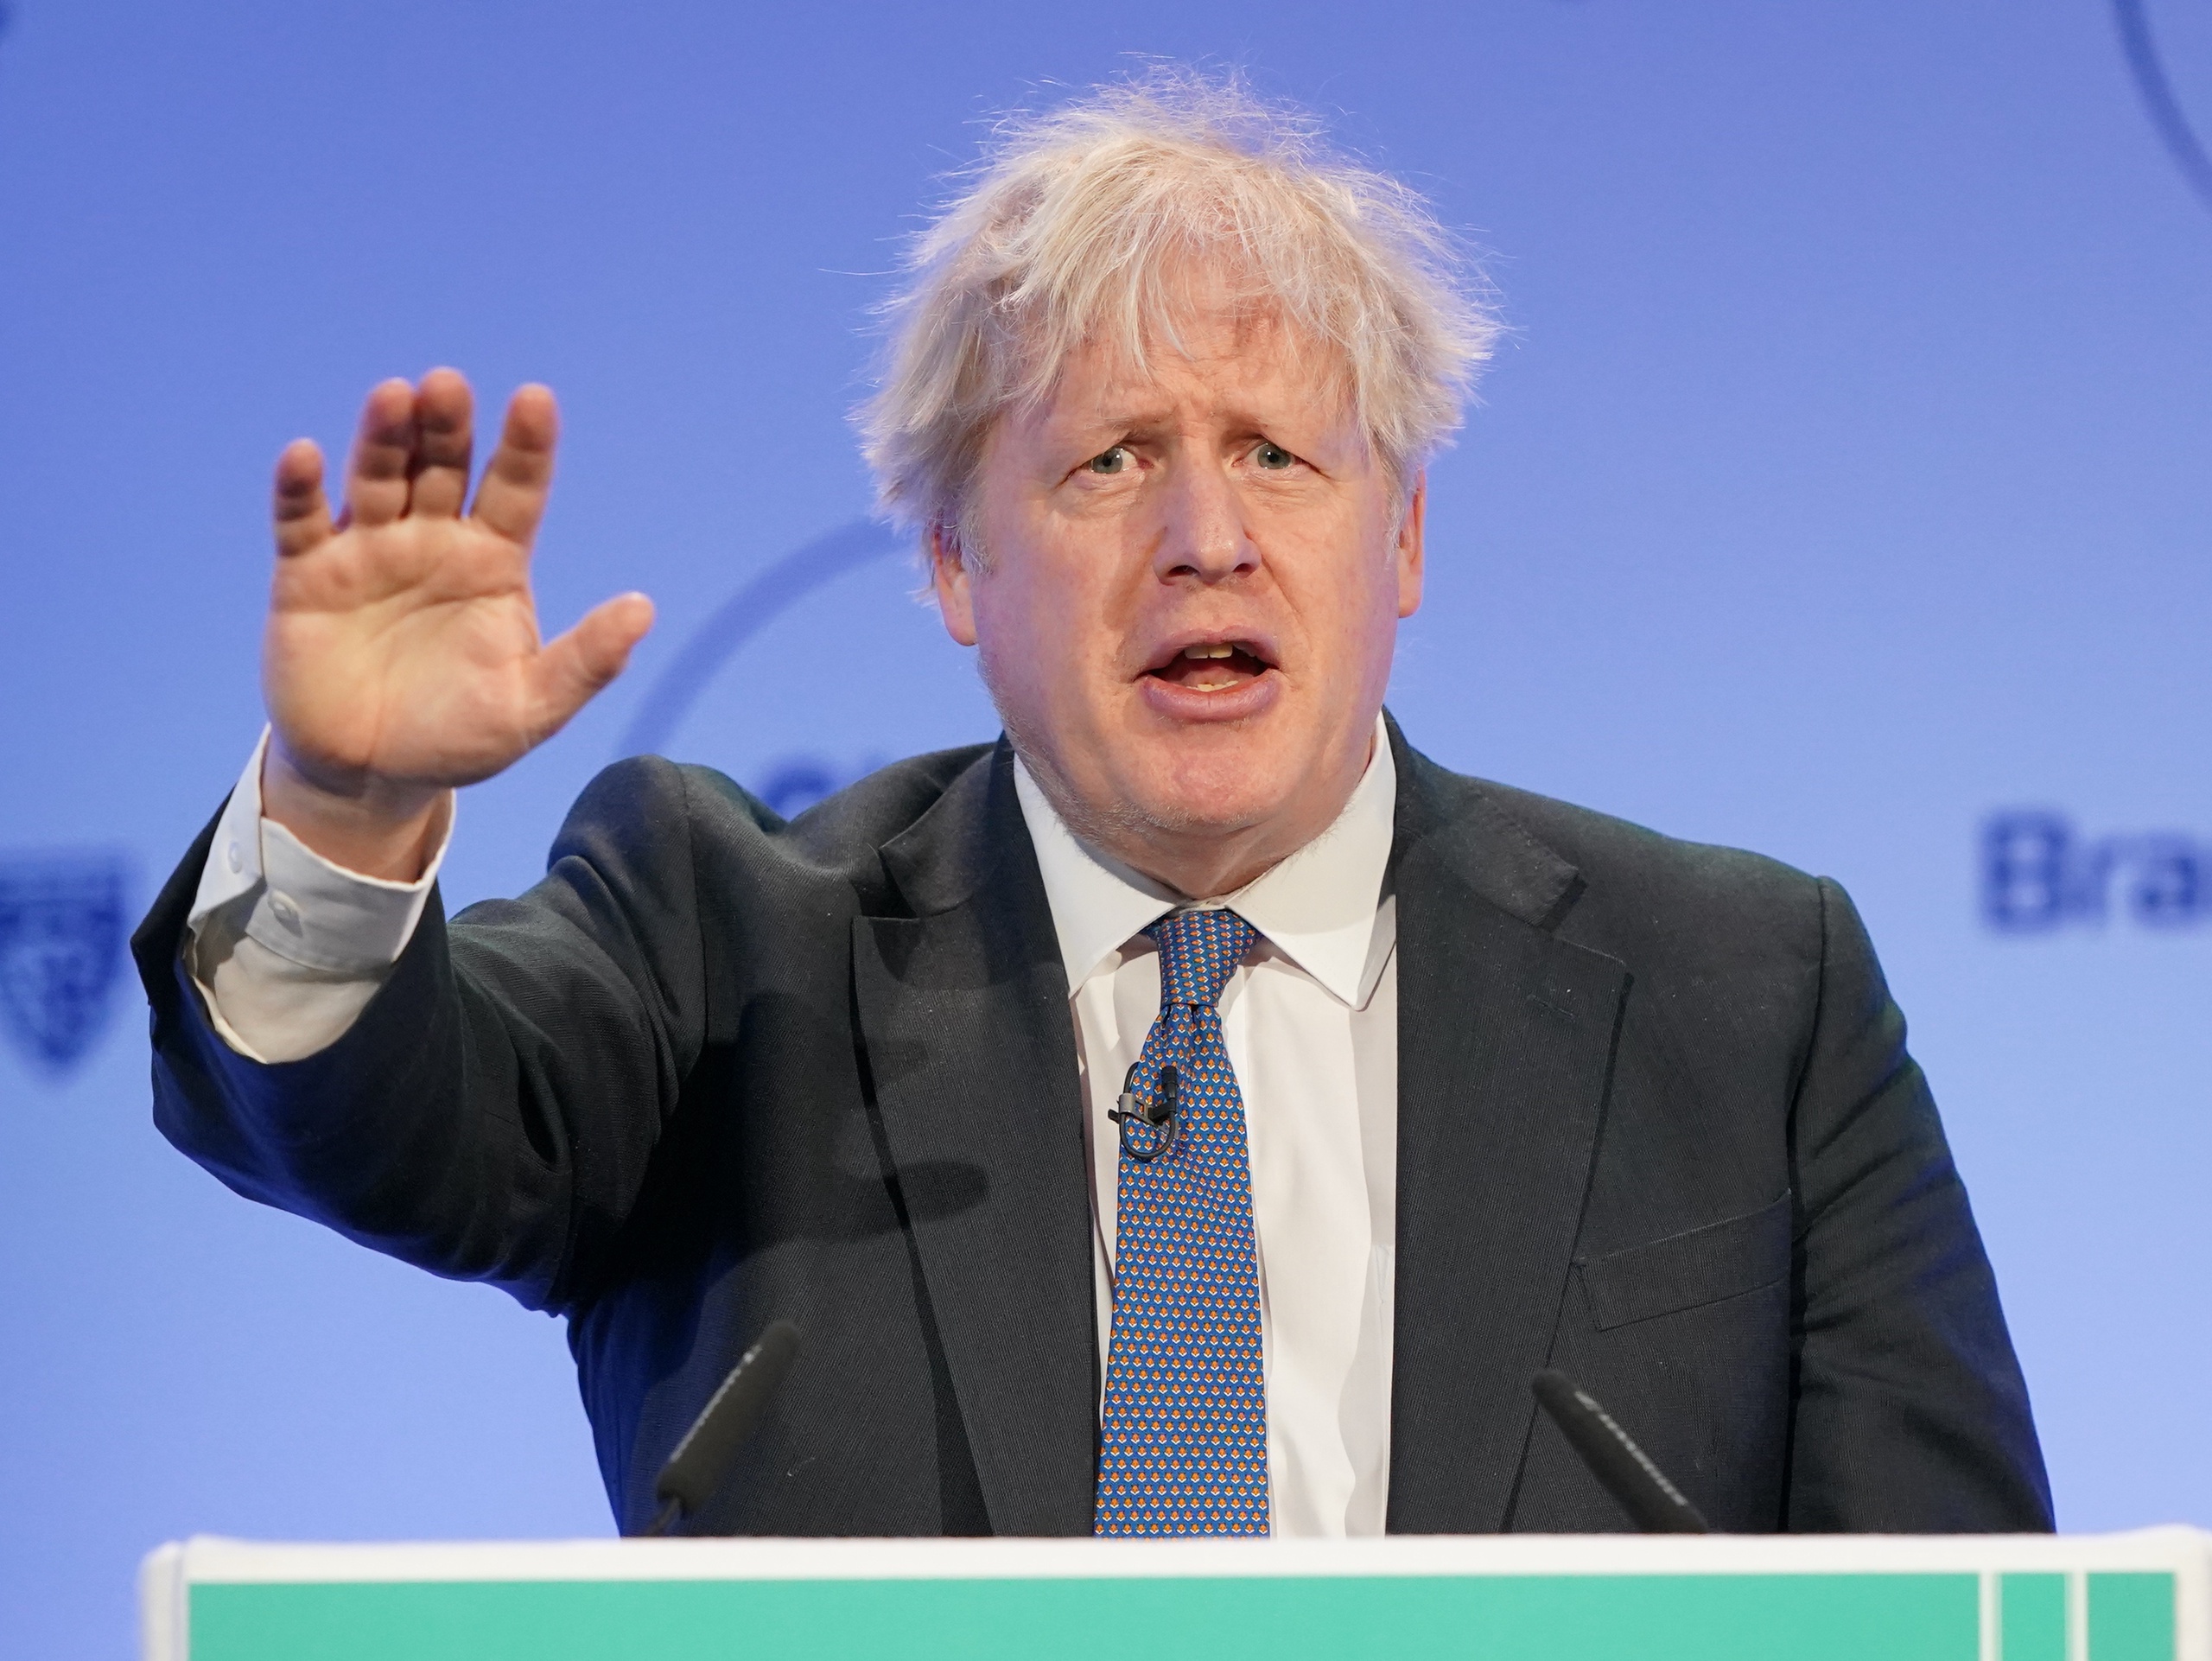 Gisterenavond stopte de Britse oud-premier Boris Johnson per direct als lid van het Lagerhuis. Aanleiding voor zijn aftreden is het onderzoek dat naar hem loopt vanwege partygate. Het onderzoeksrapport is weliswaar nog niet openbaar gemaakt, maar Johnson had het al ingezien. Hij verklaarde dat de onderzoekscommissie 'hem kennelijk uit het parlement wil duwen'.